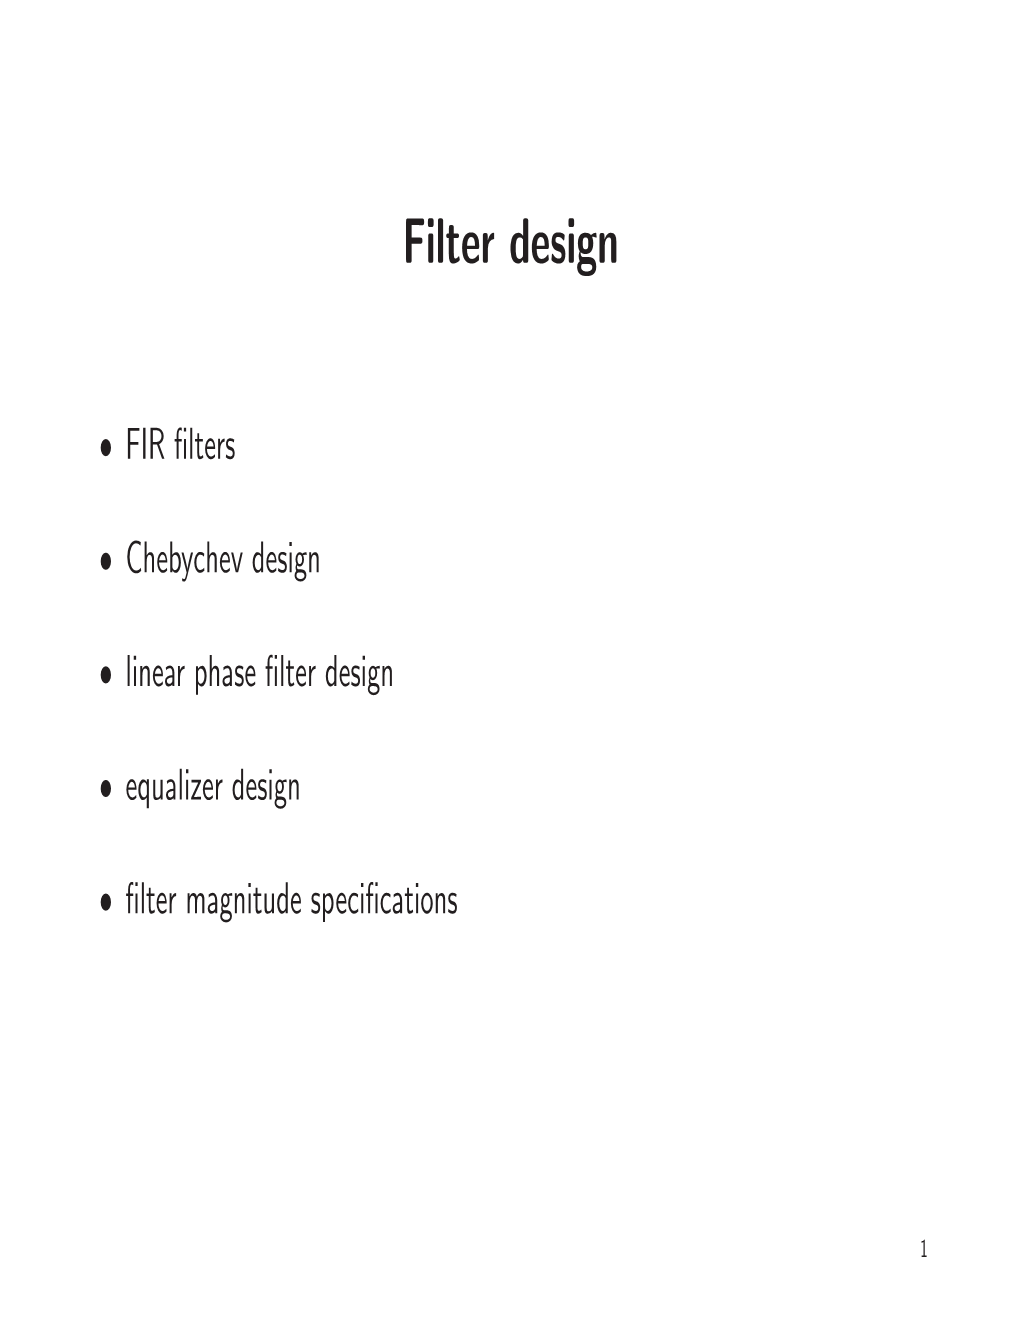 Filter Design and Equalization